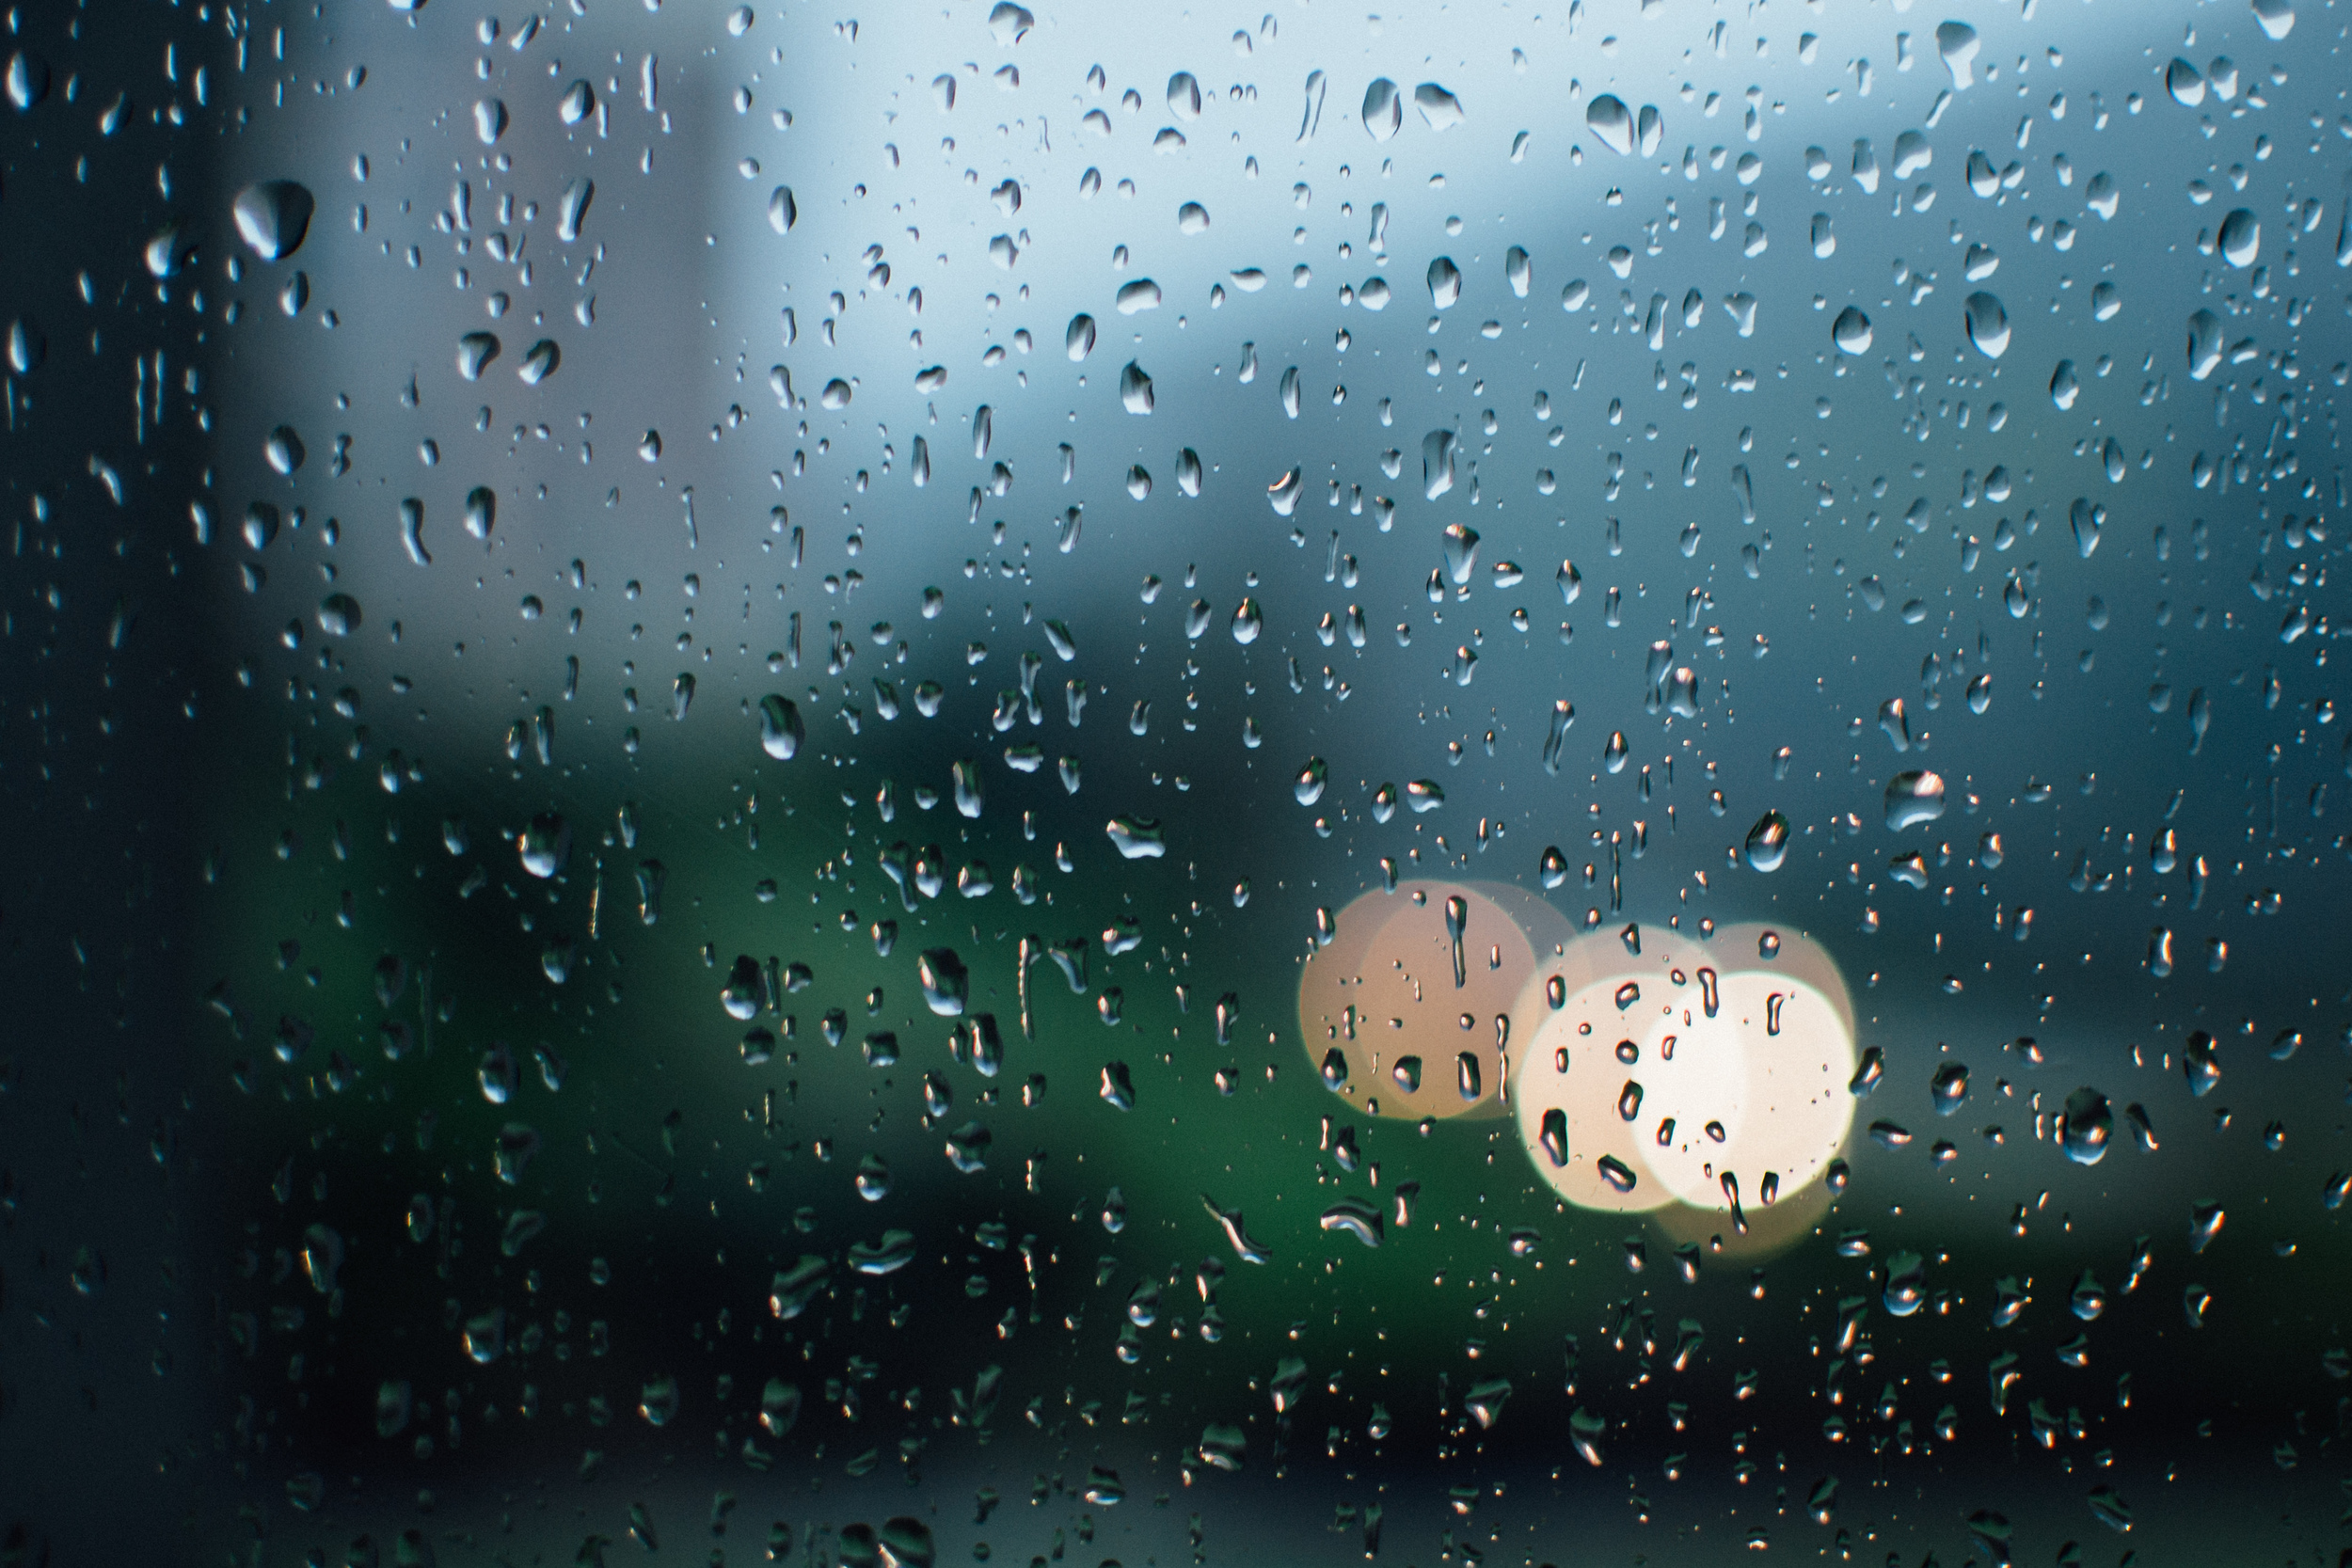 Rainy Sunday Mornings || 31/366